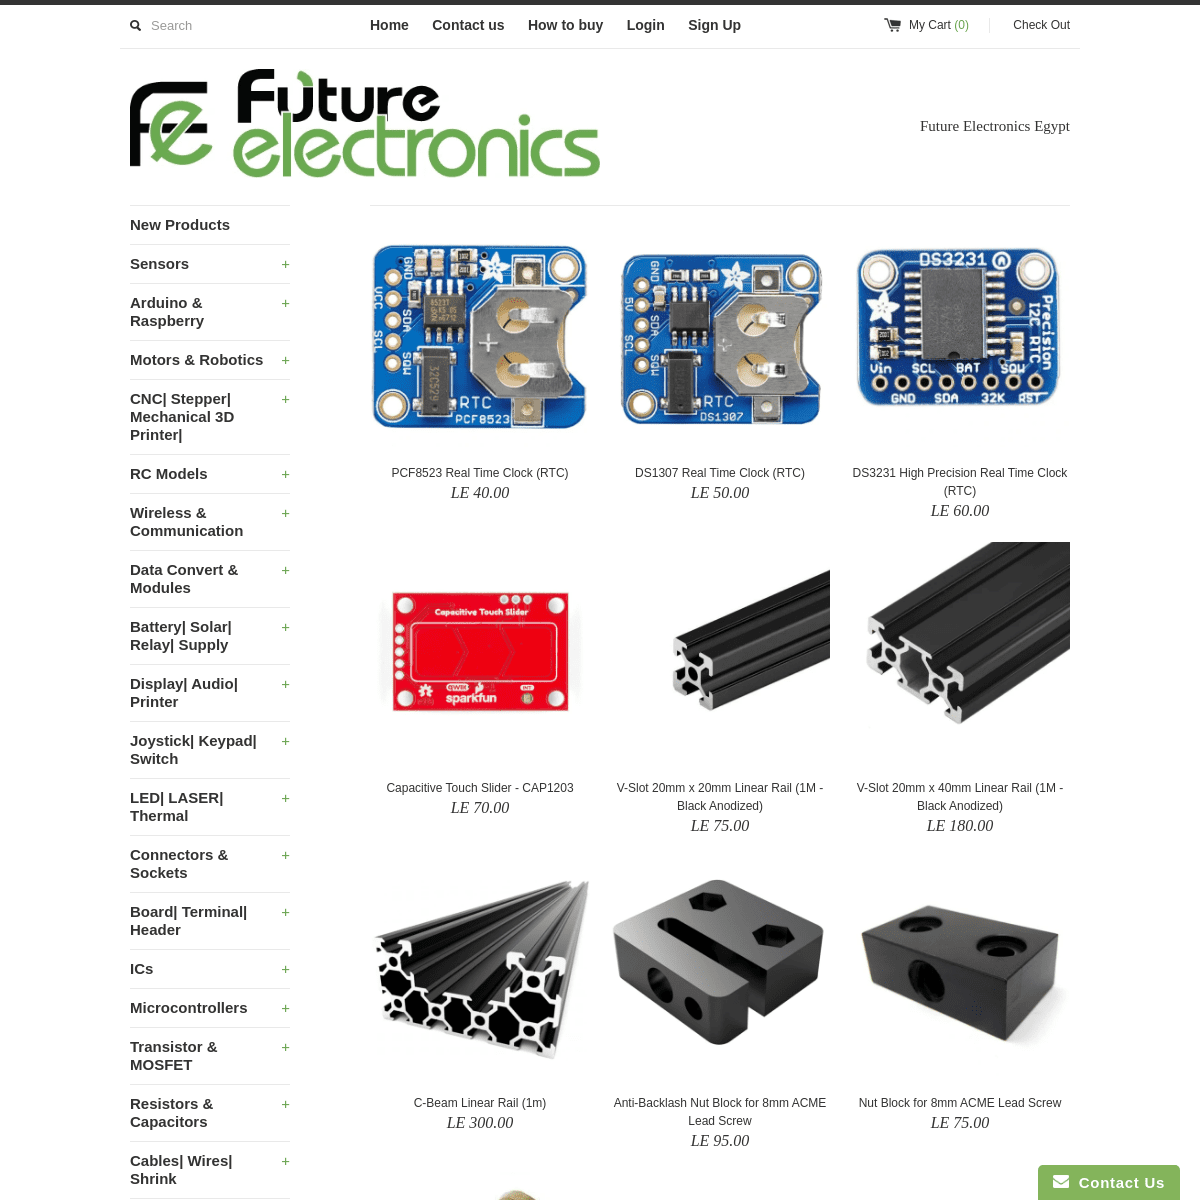 A complete backup of fut-electronics.com